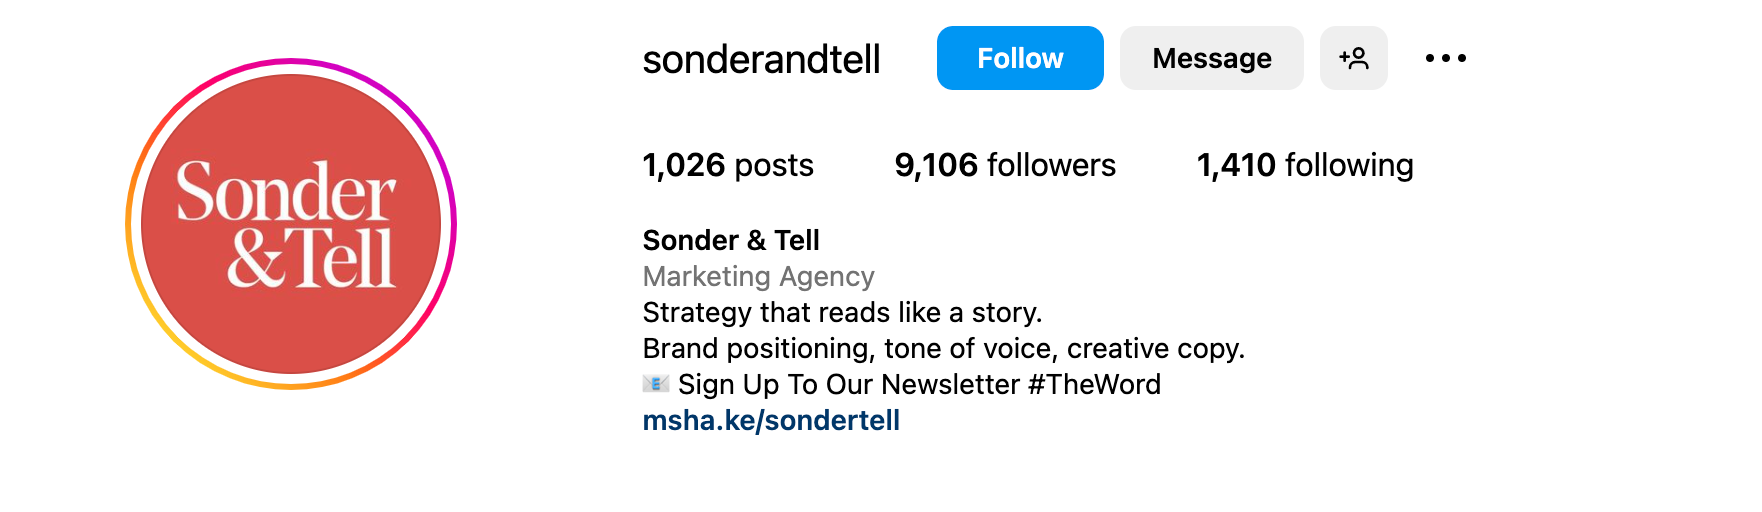 Instagram bio ideas - Sonder & Tell